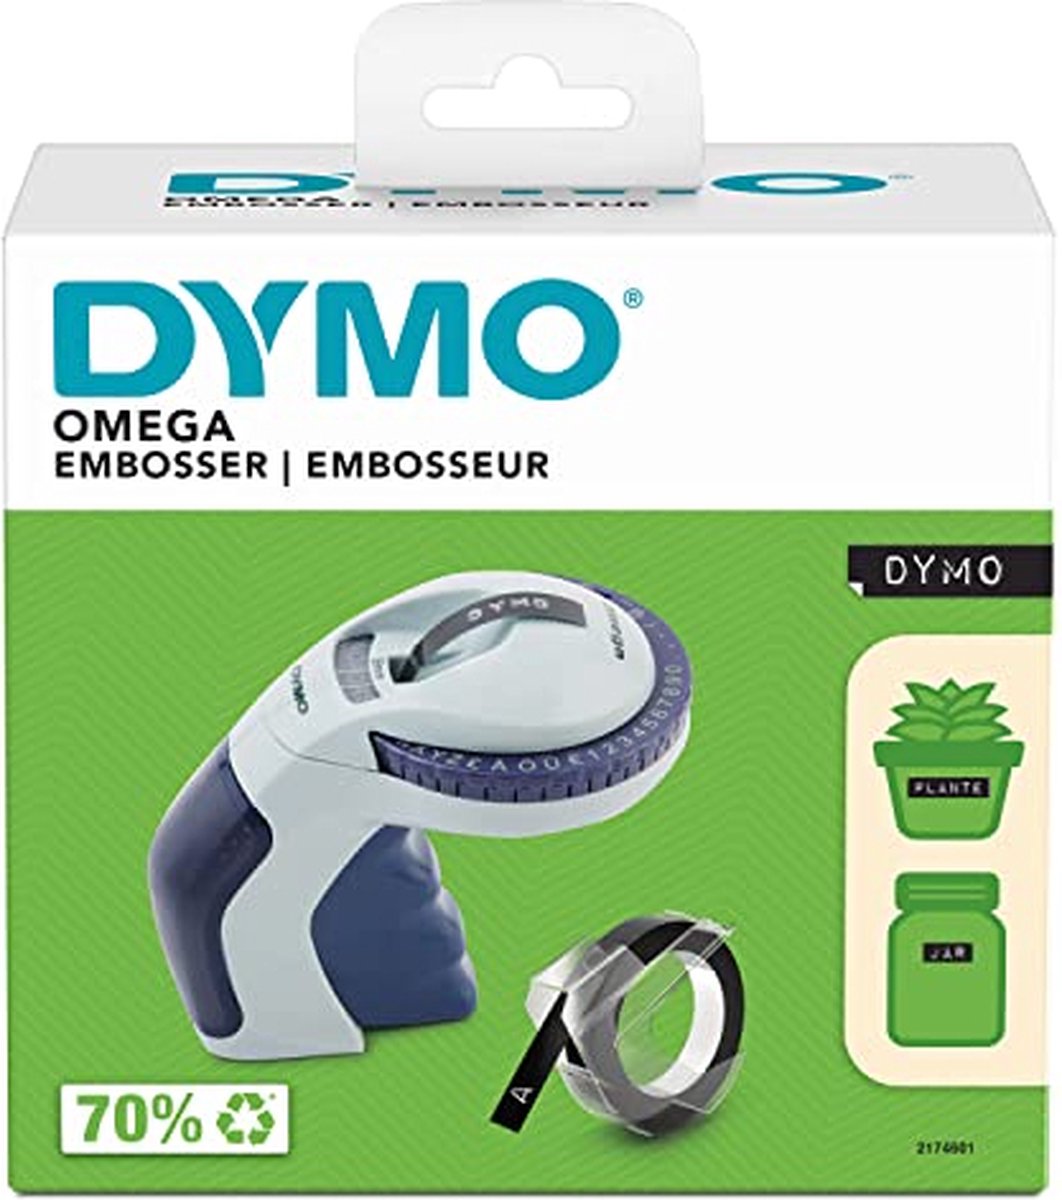 DYMO Omega labelmaker voor reliëfdruk | Kleine Lettertang met draaiklikwiel en ergonomisch ontwerp | Voor thuis, doe-het-zelven en knutselen (£/€, Ä, Ö & Ü) - DYMO